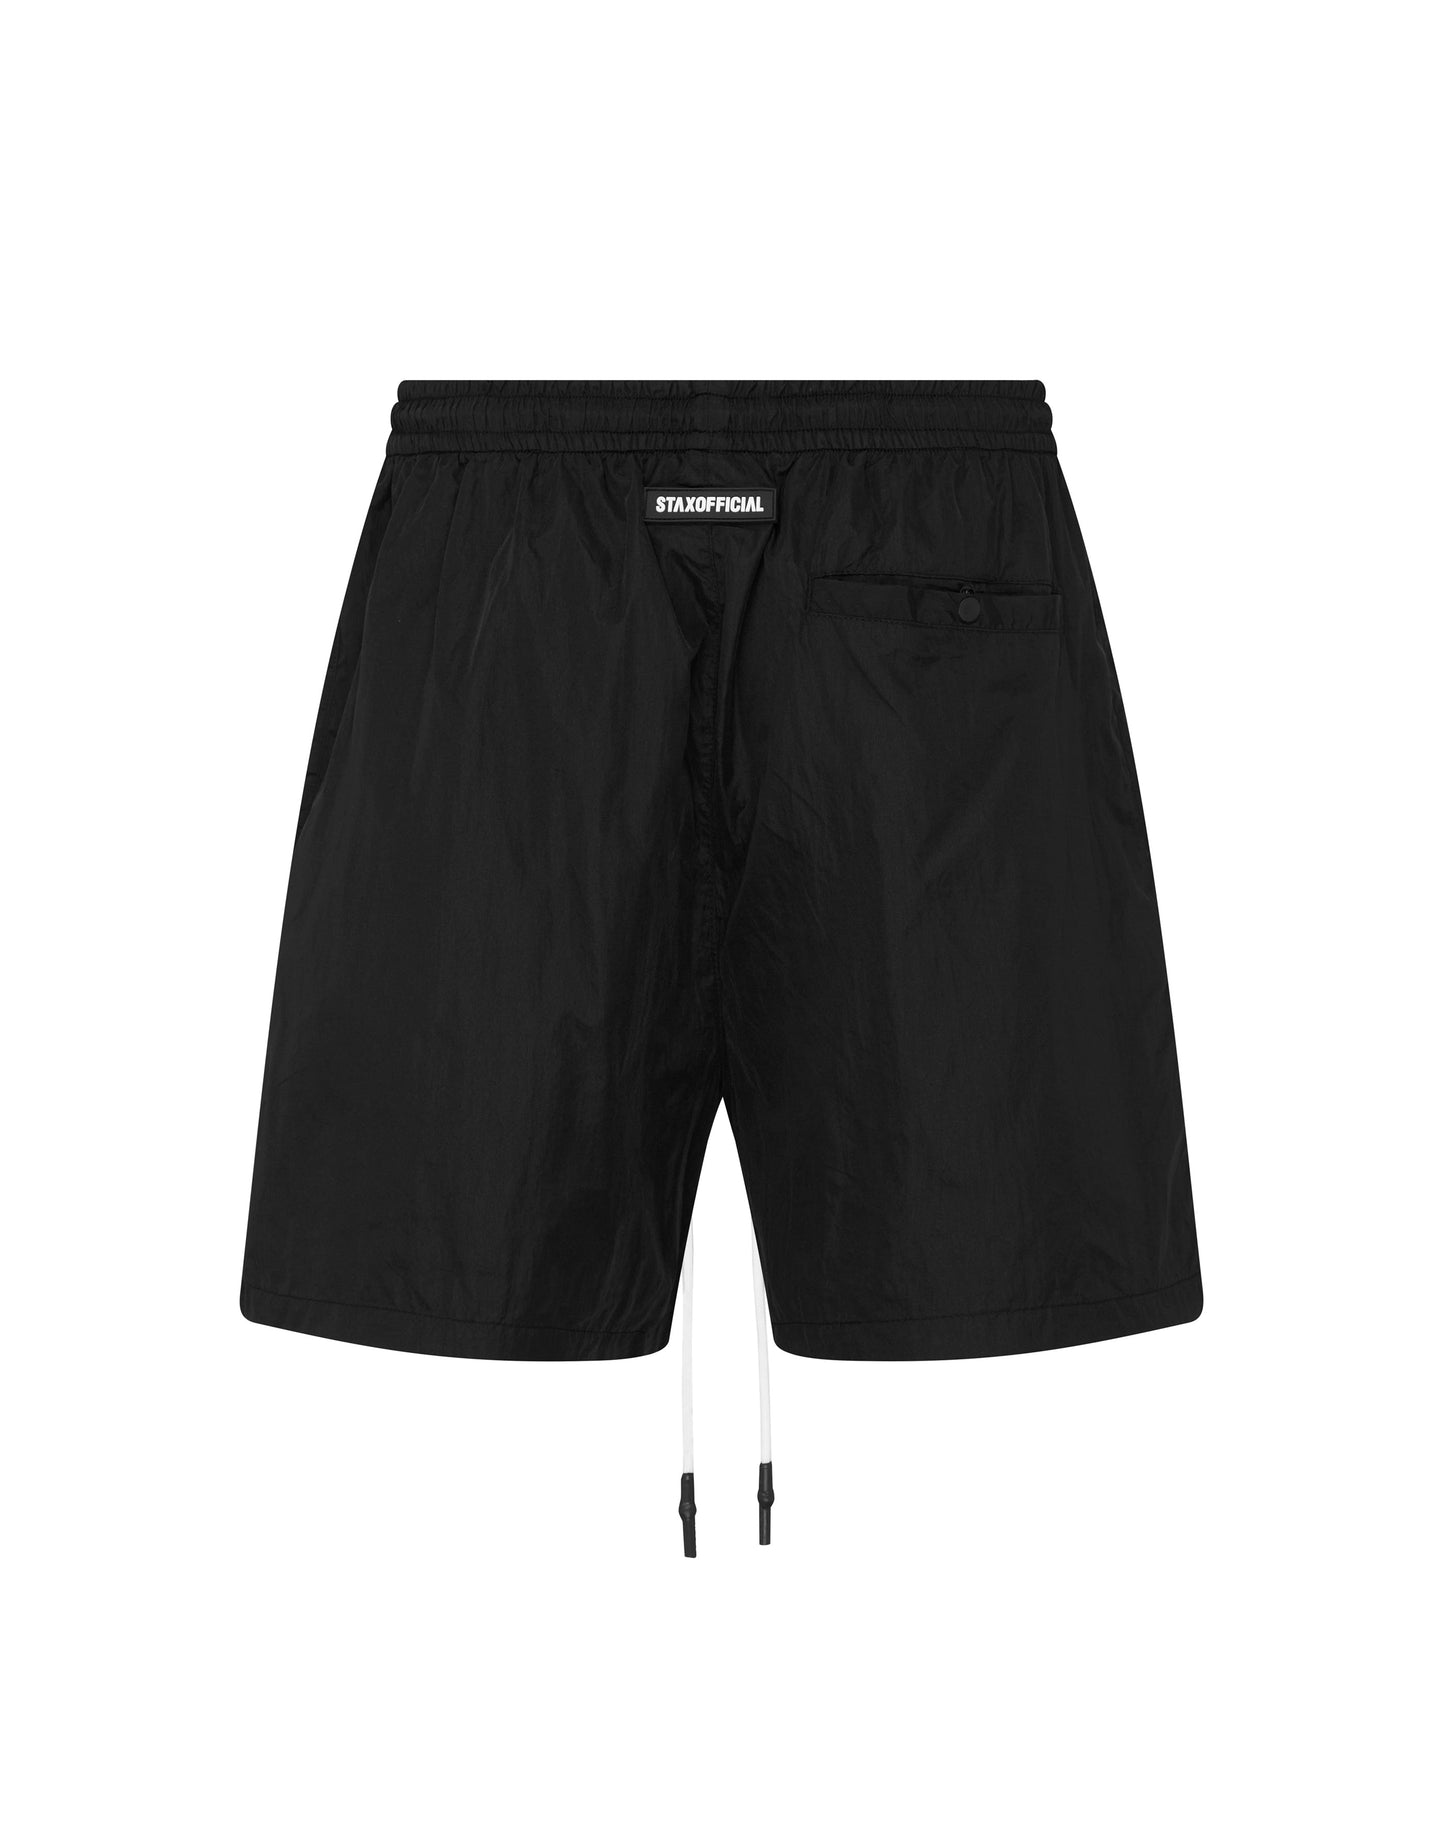 Mens Nylon Pocket Shorts - Beige